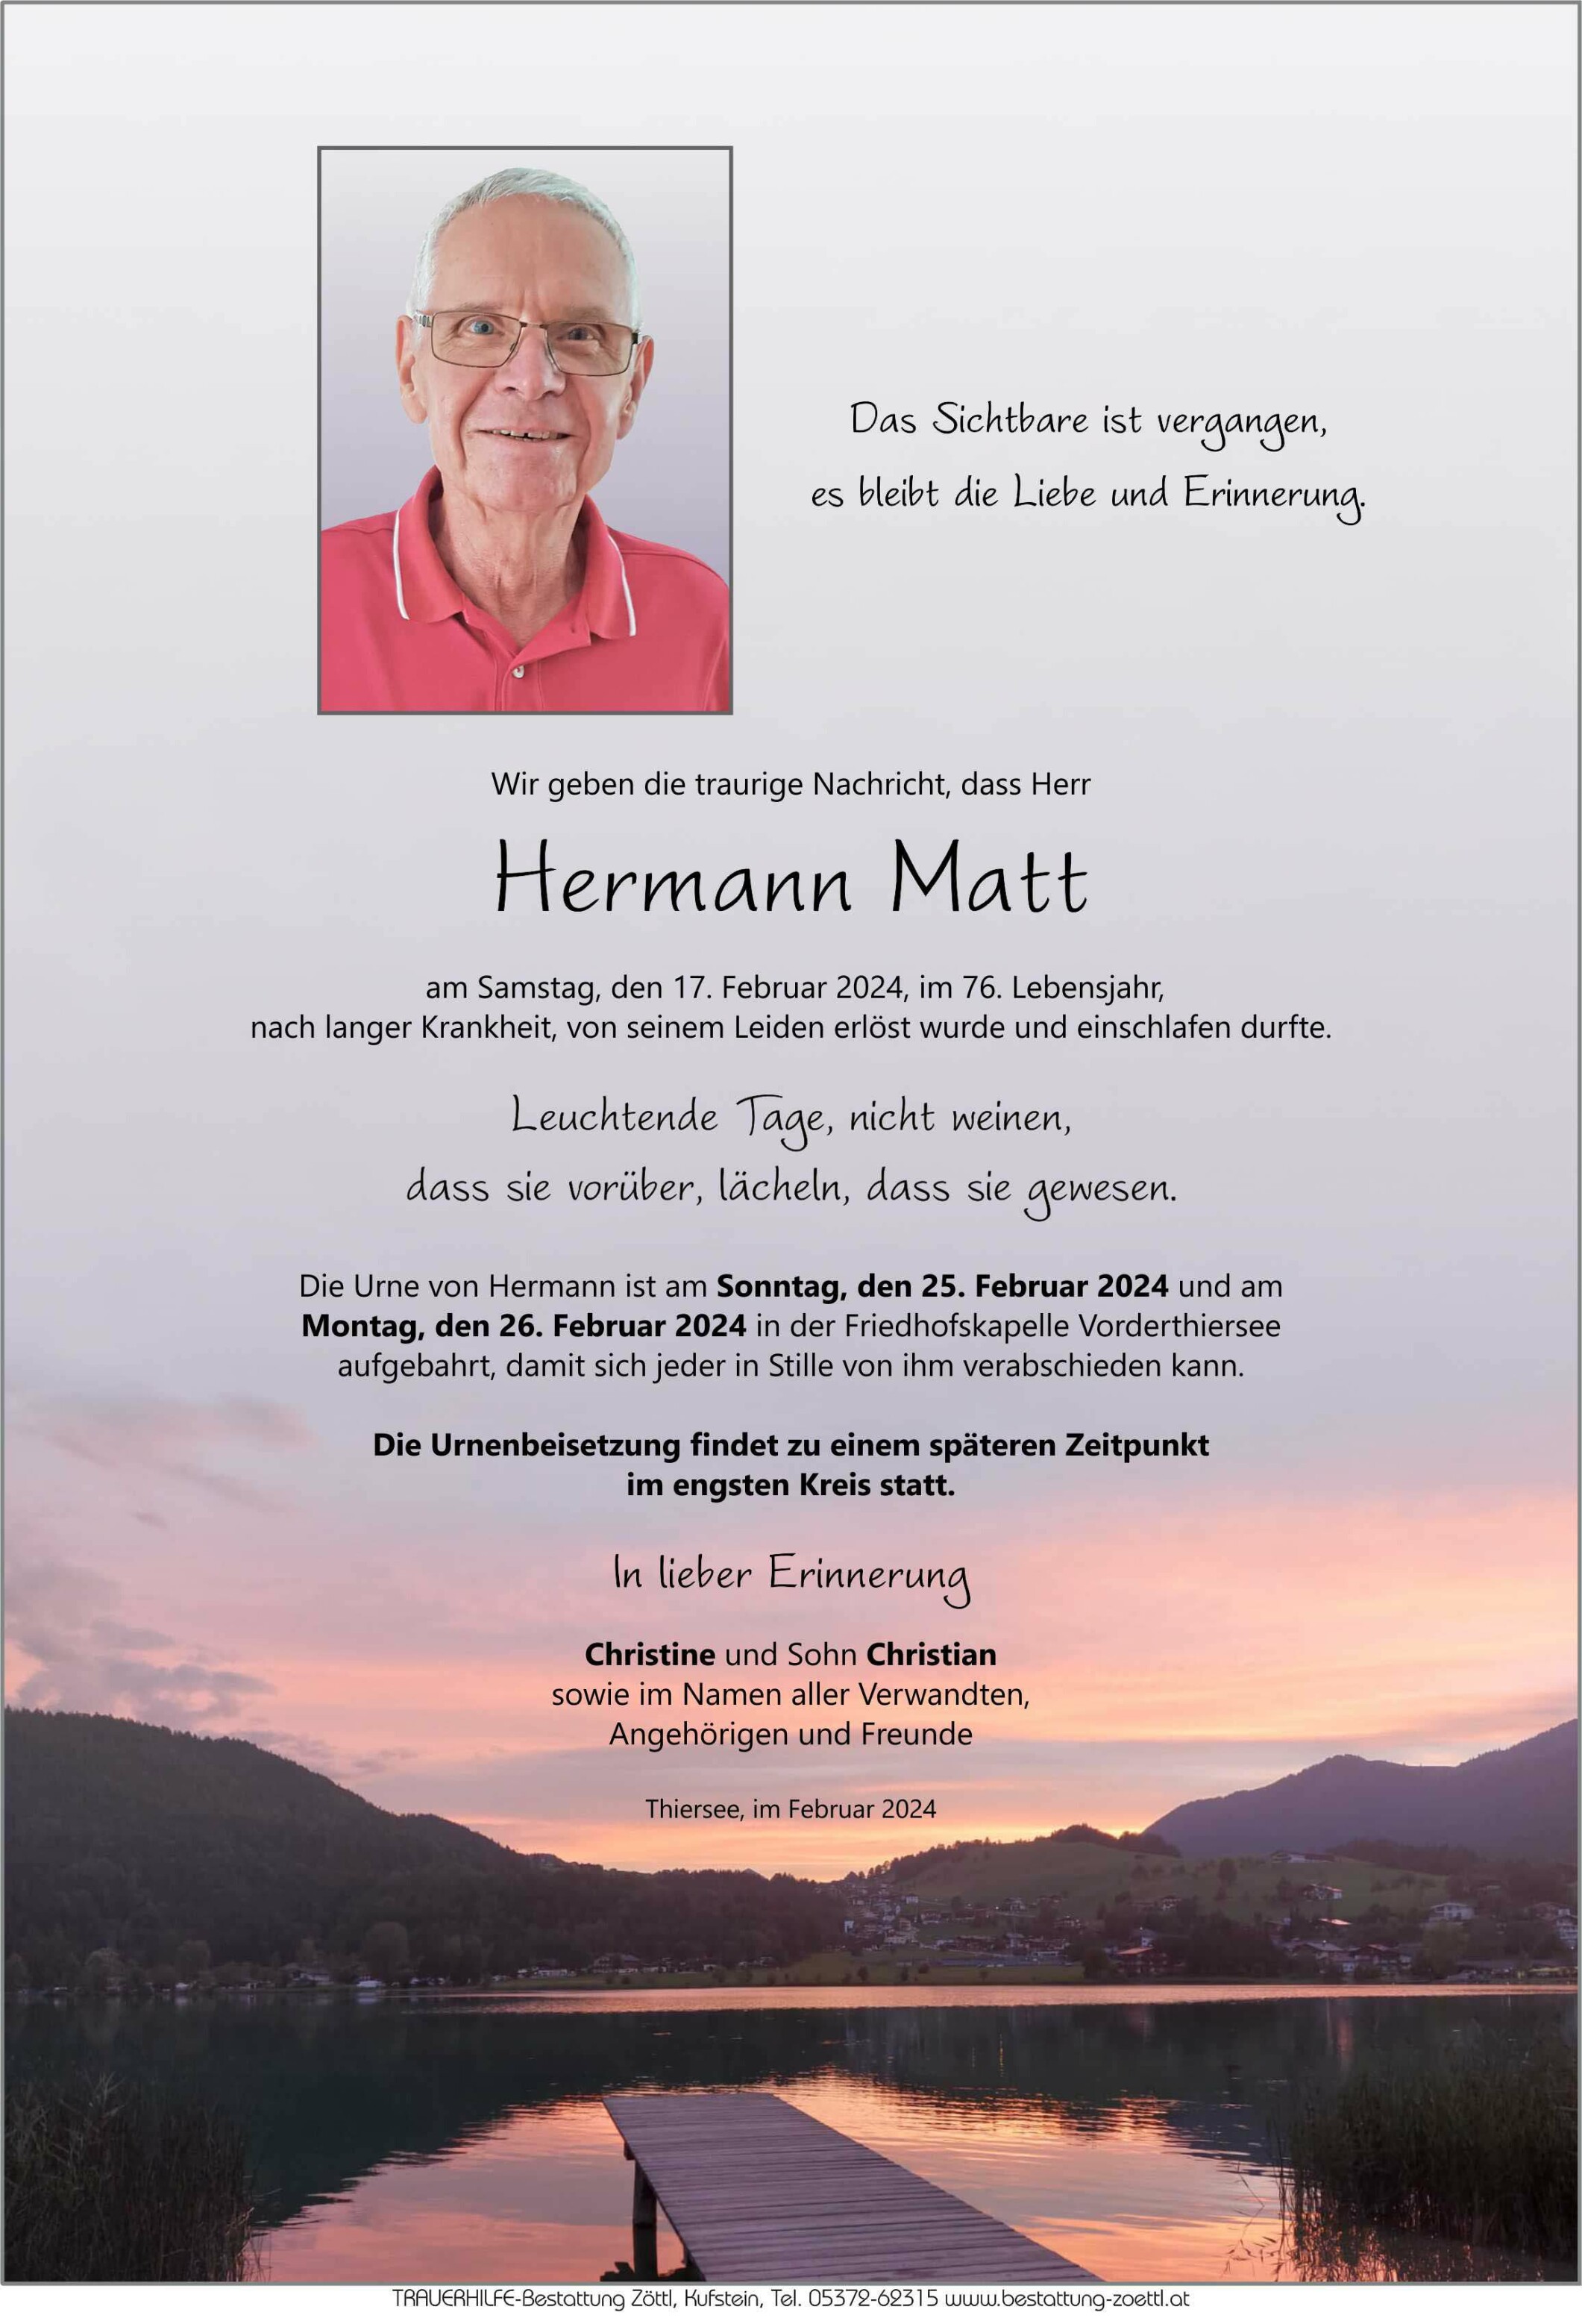 Hermann Matt